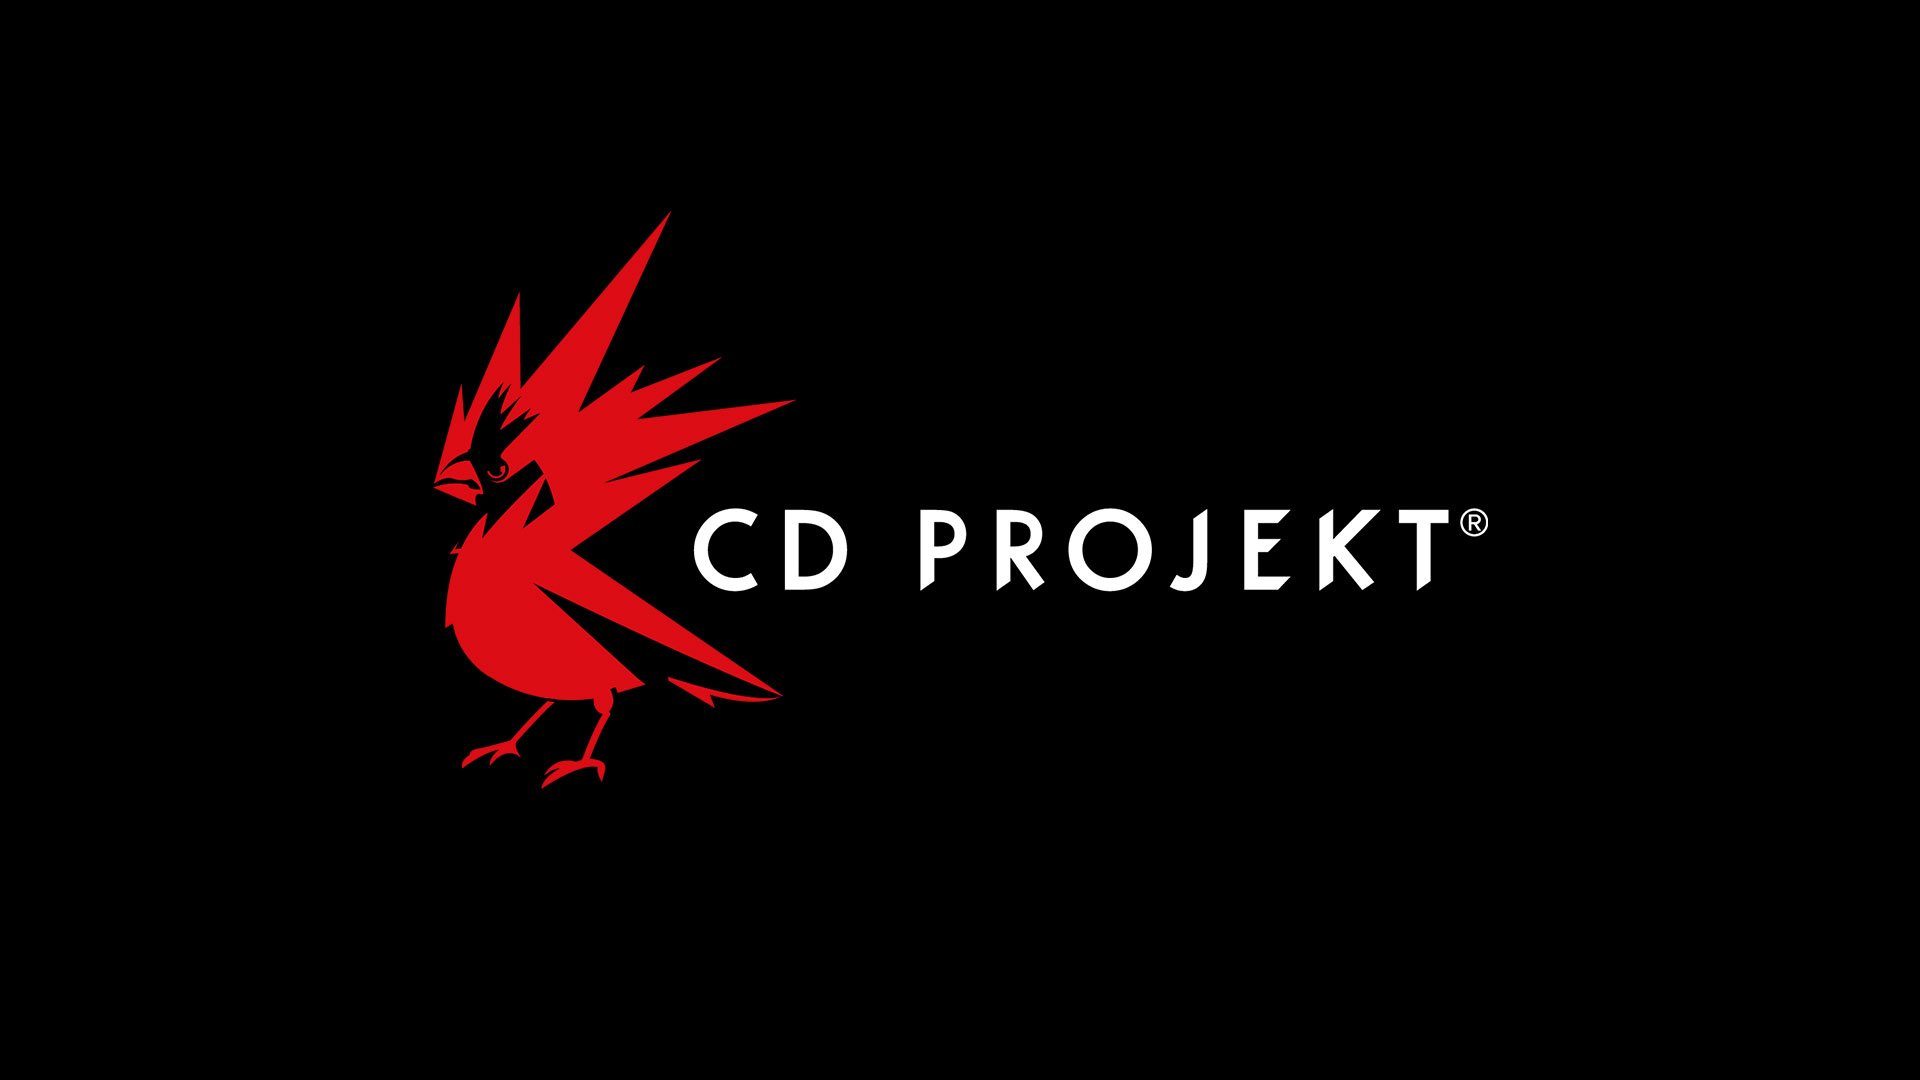 Адам Кичиньский уходит с поста гендиректора CD Projekt: с сайта NEWXBOXONE.RU